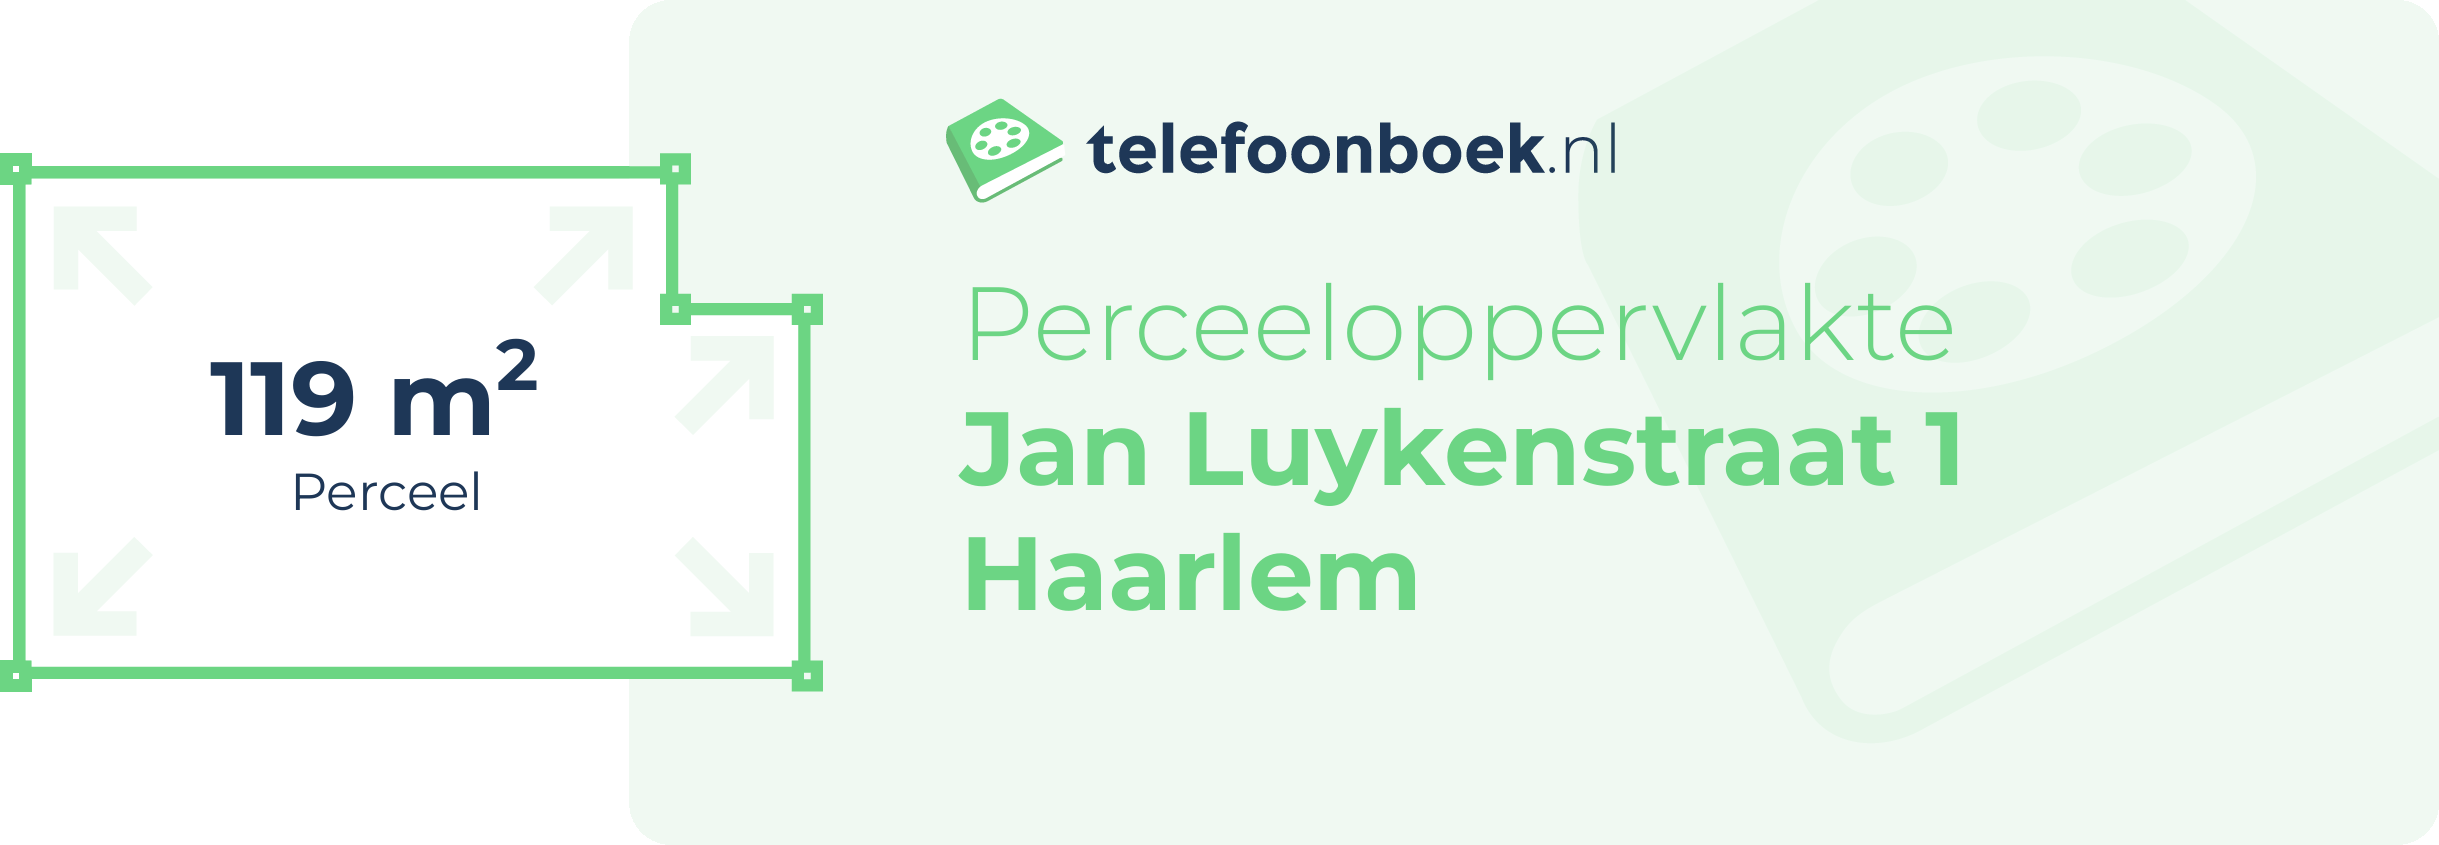 Perceeloppervlakte Jan Luykenstraat 1 Haarlem